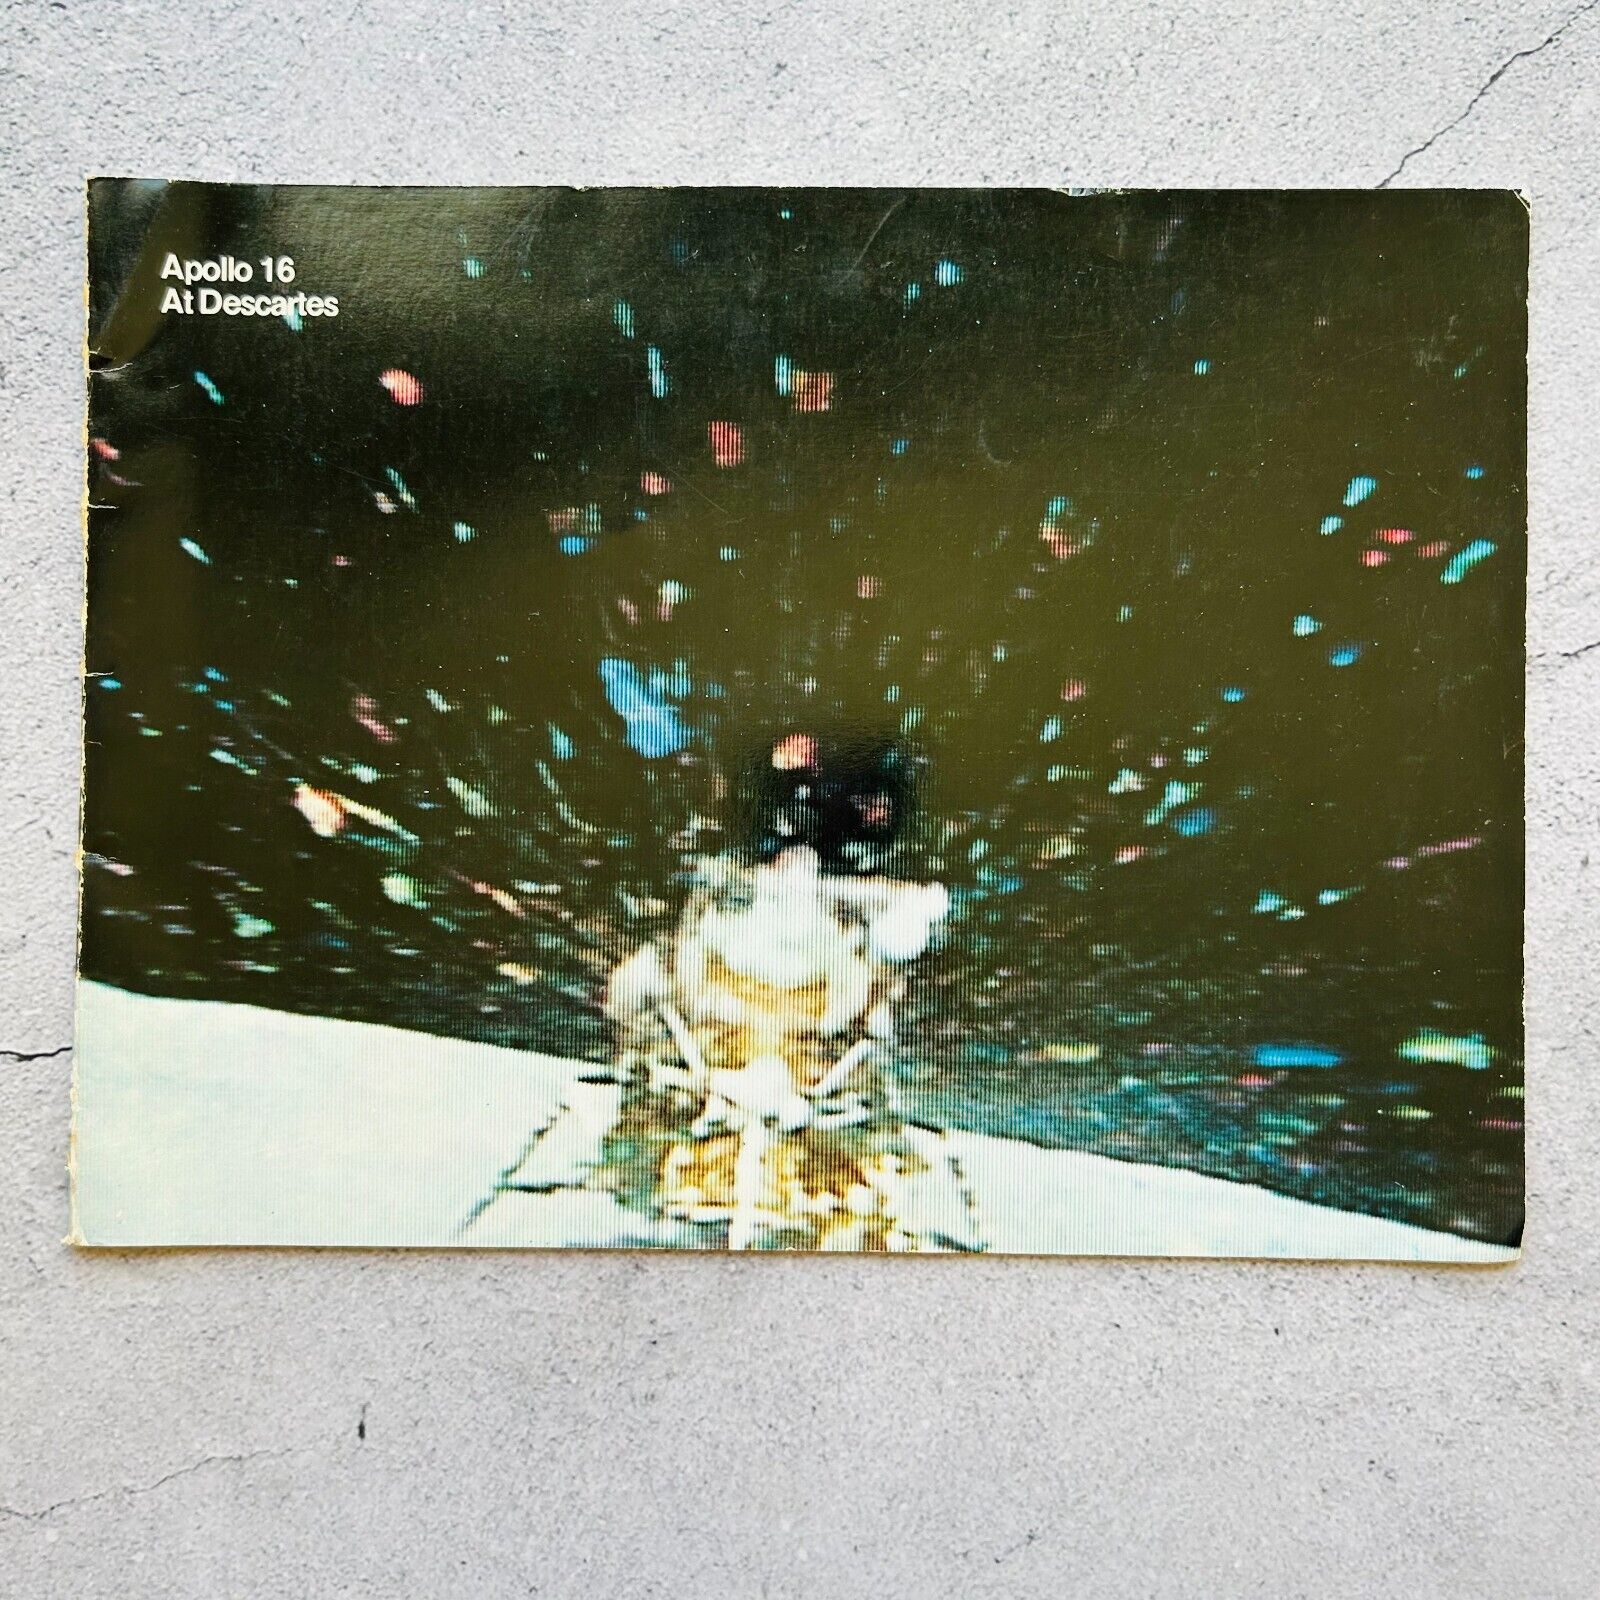 Apollo 16 at Descartes EP-97 Booklet 1972